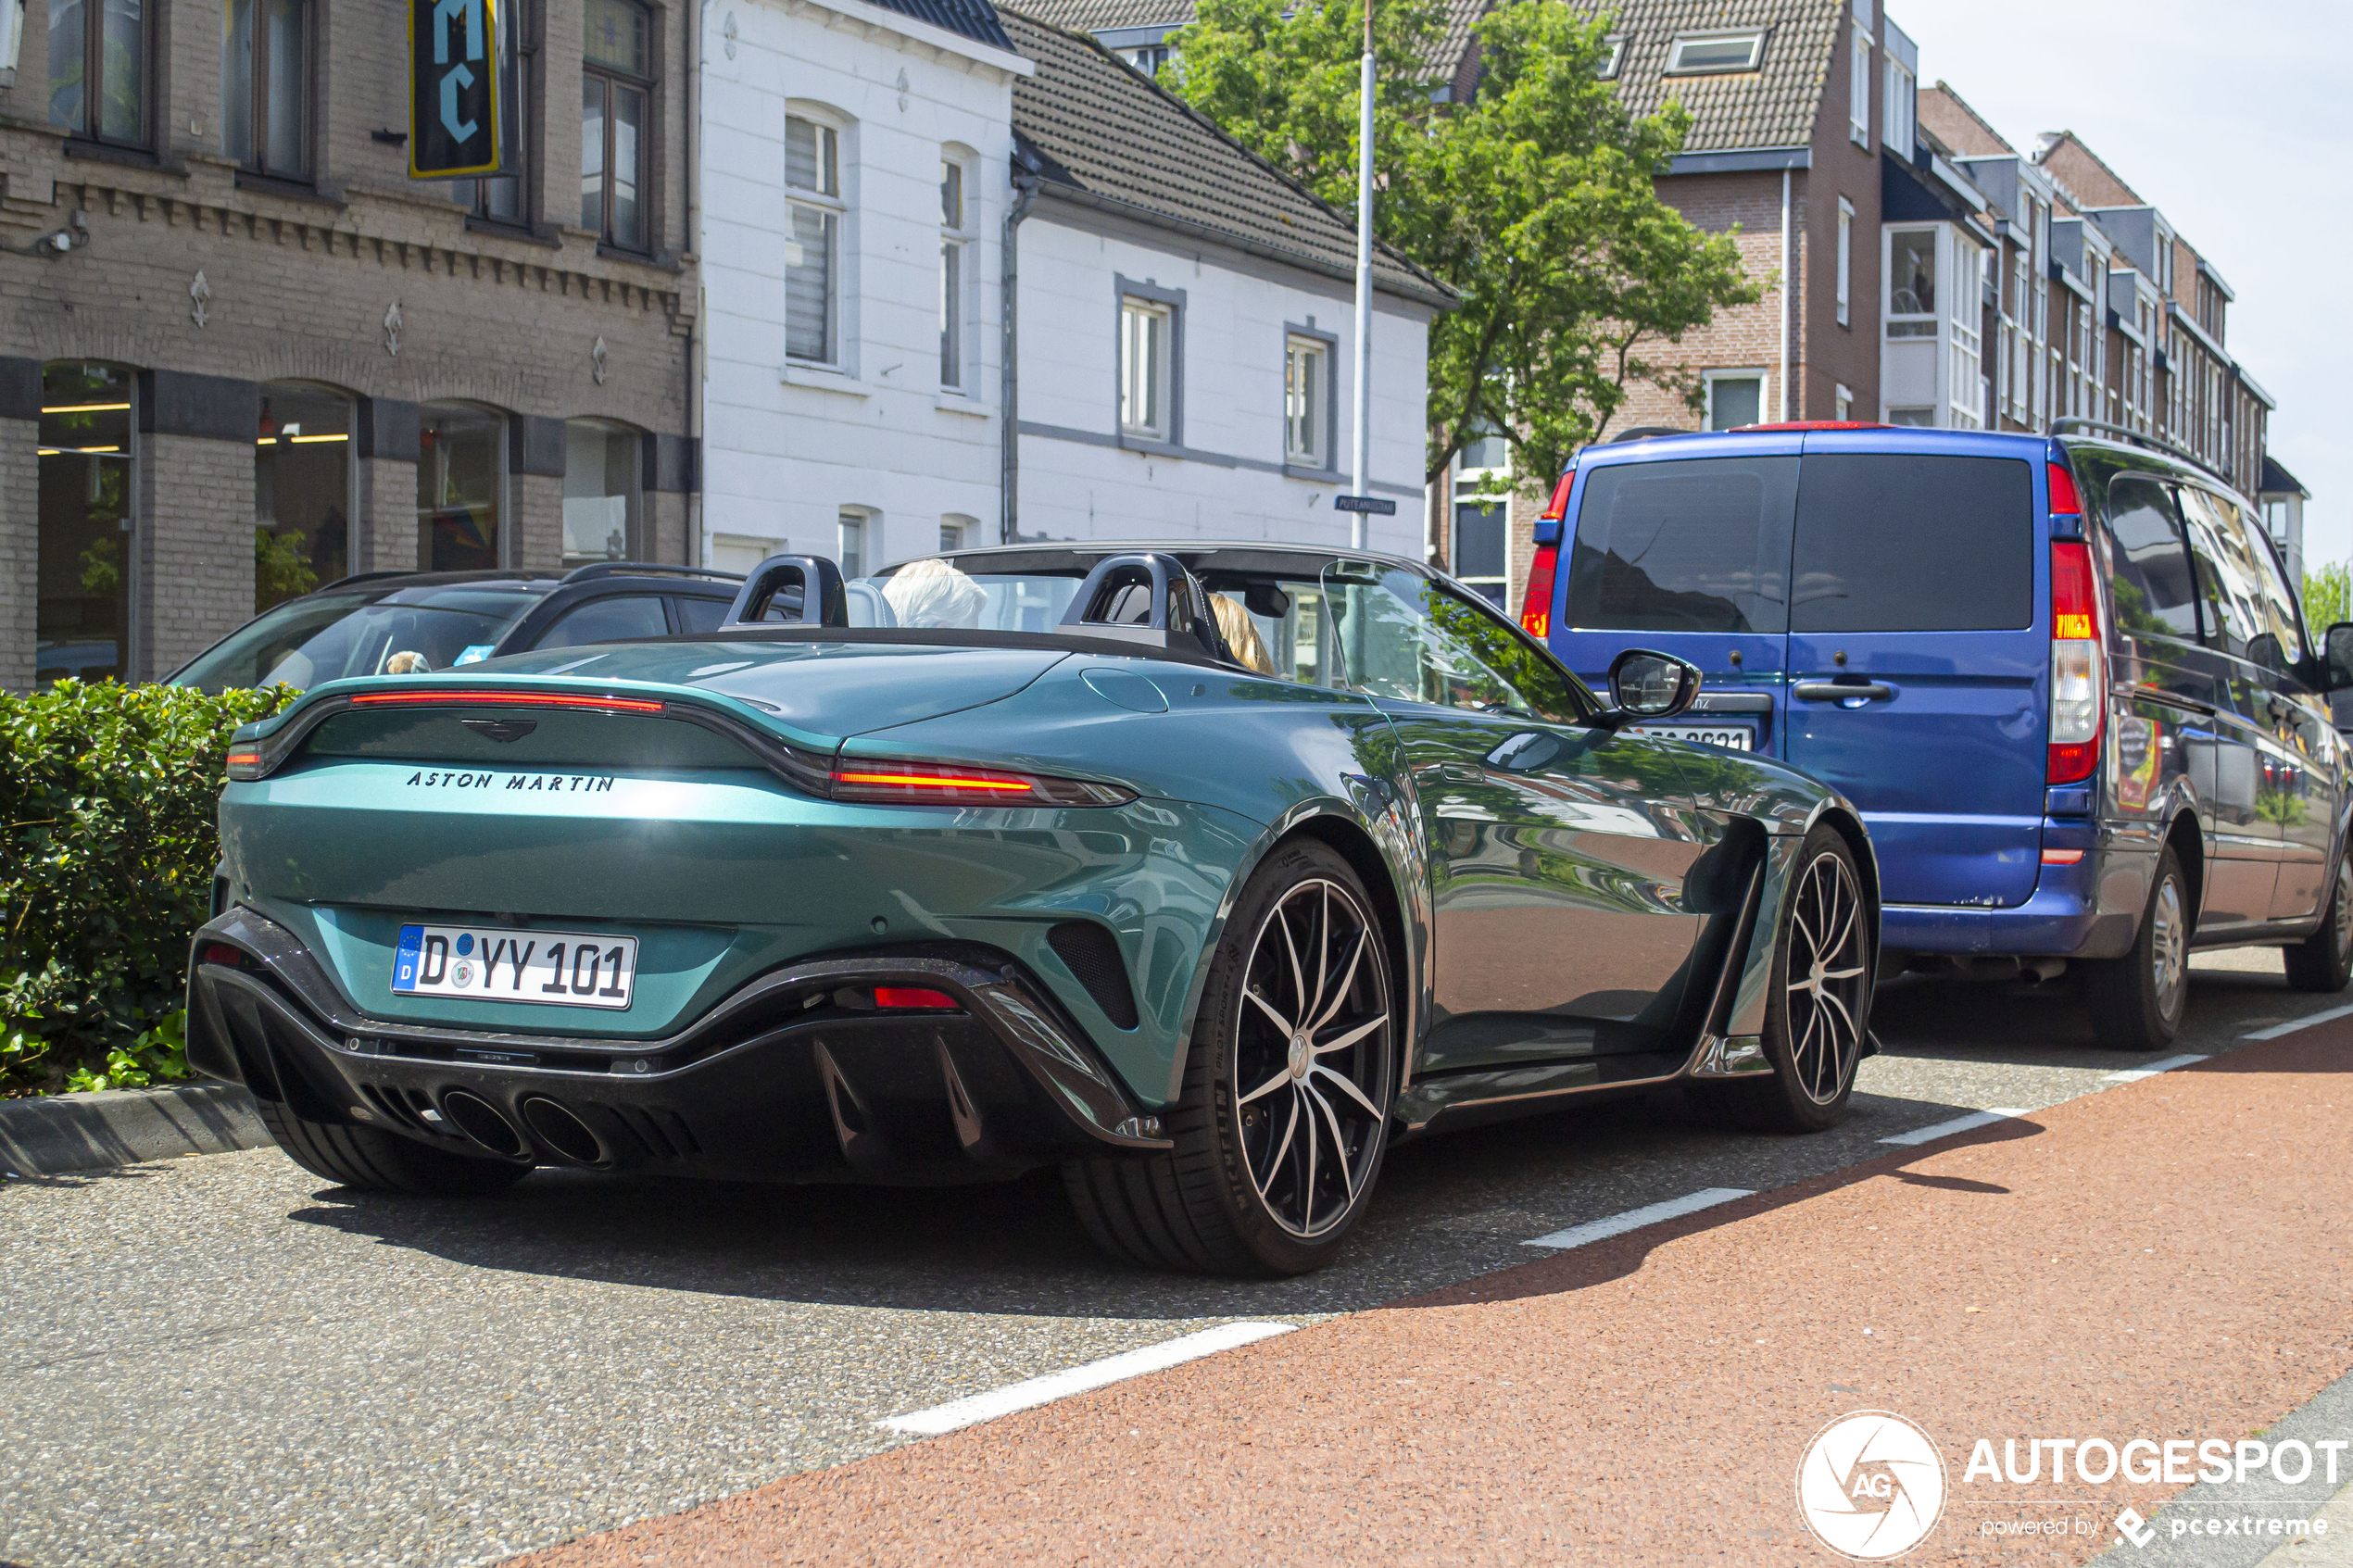 Nieuwe Aston Martin V12 Vantage Roadster duikt op in Venlo